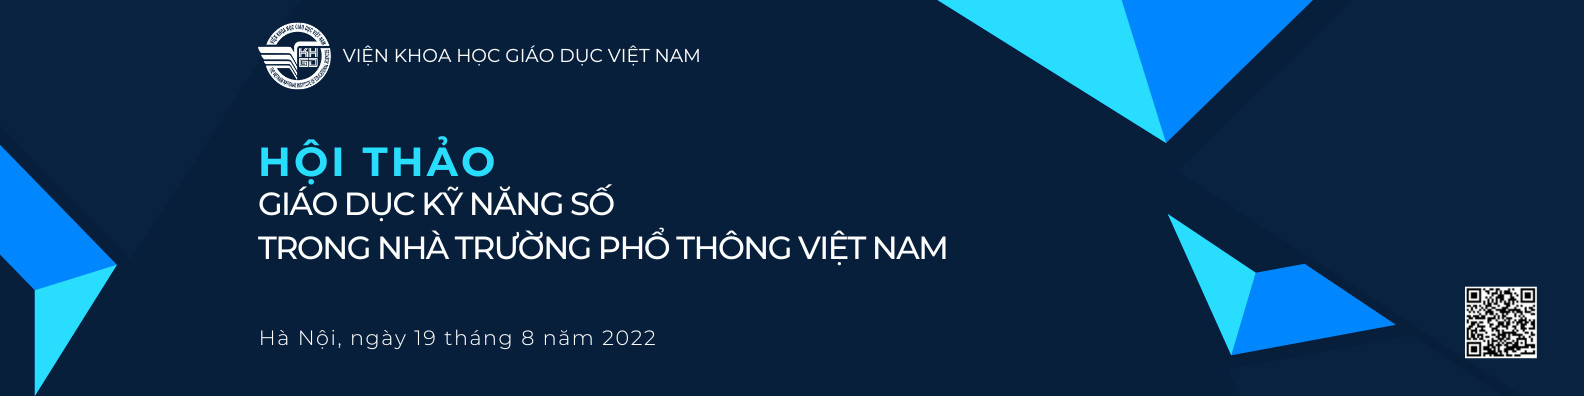 Thông báo Hội thảo “Giáo dục kỹ năng số trong nhà trường phổ thông Việt Nam”